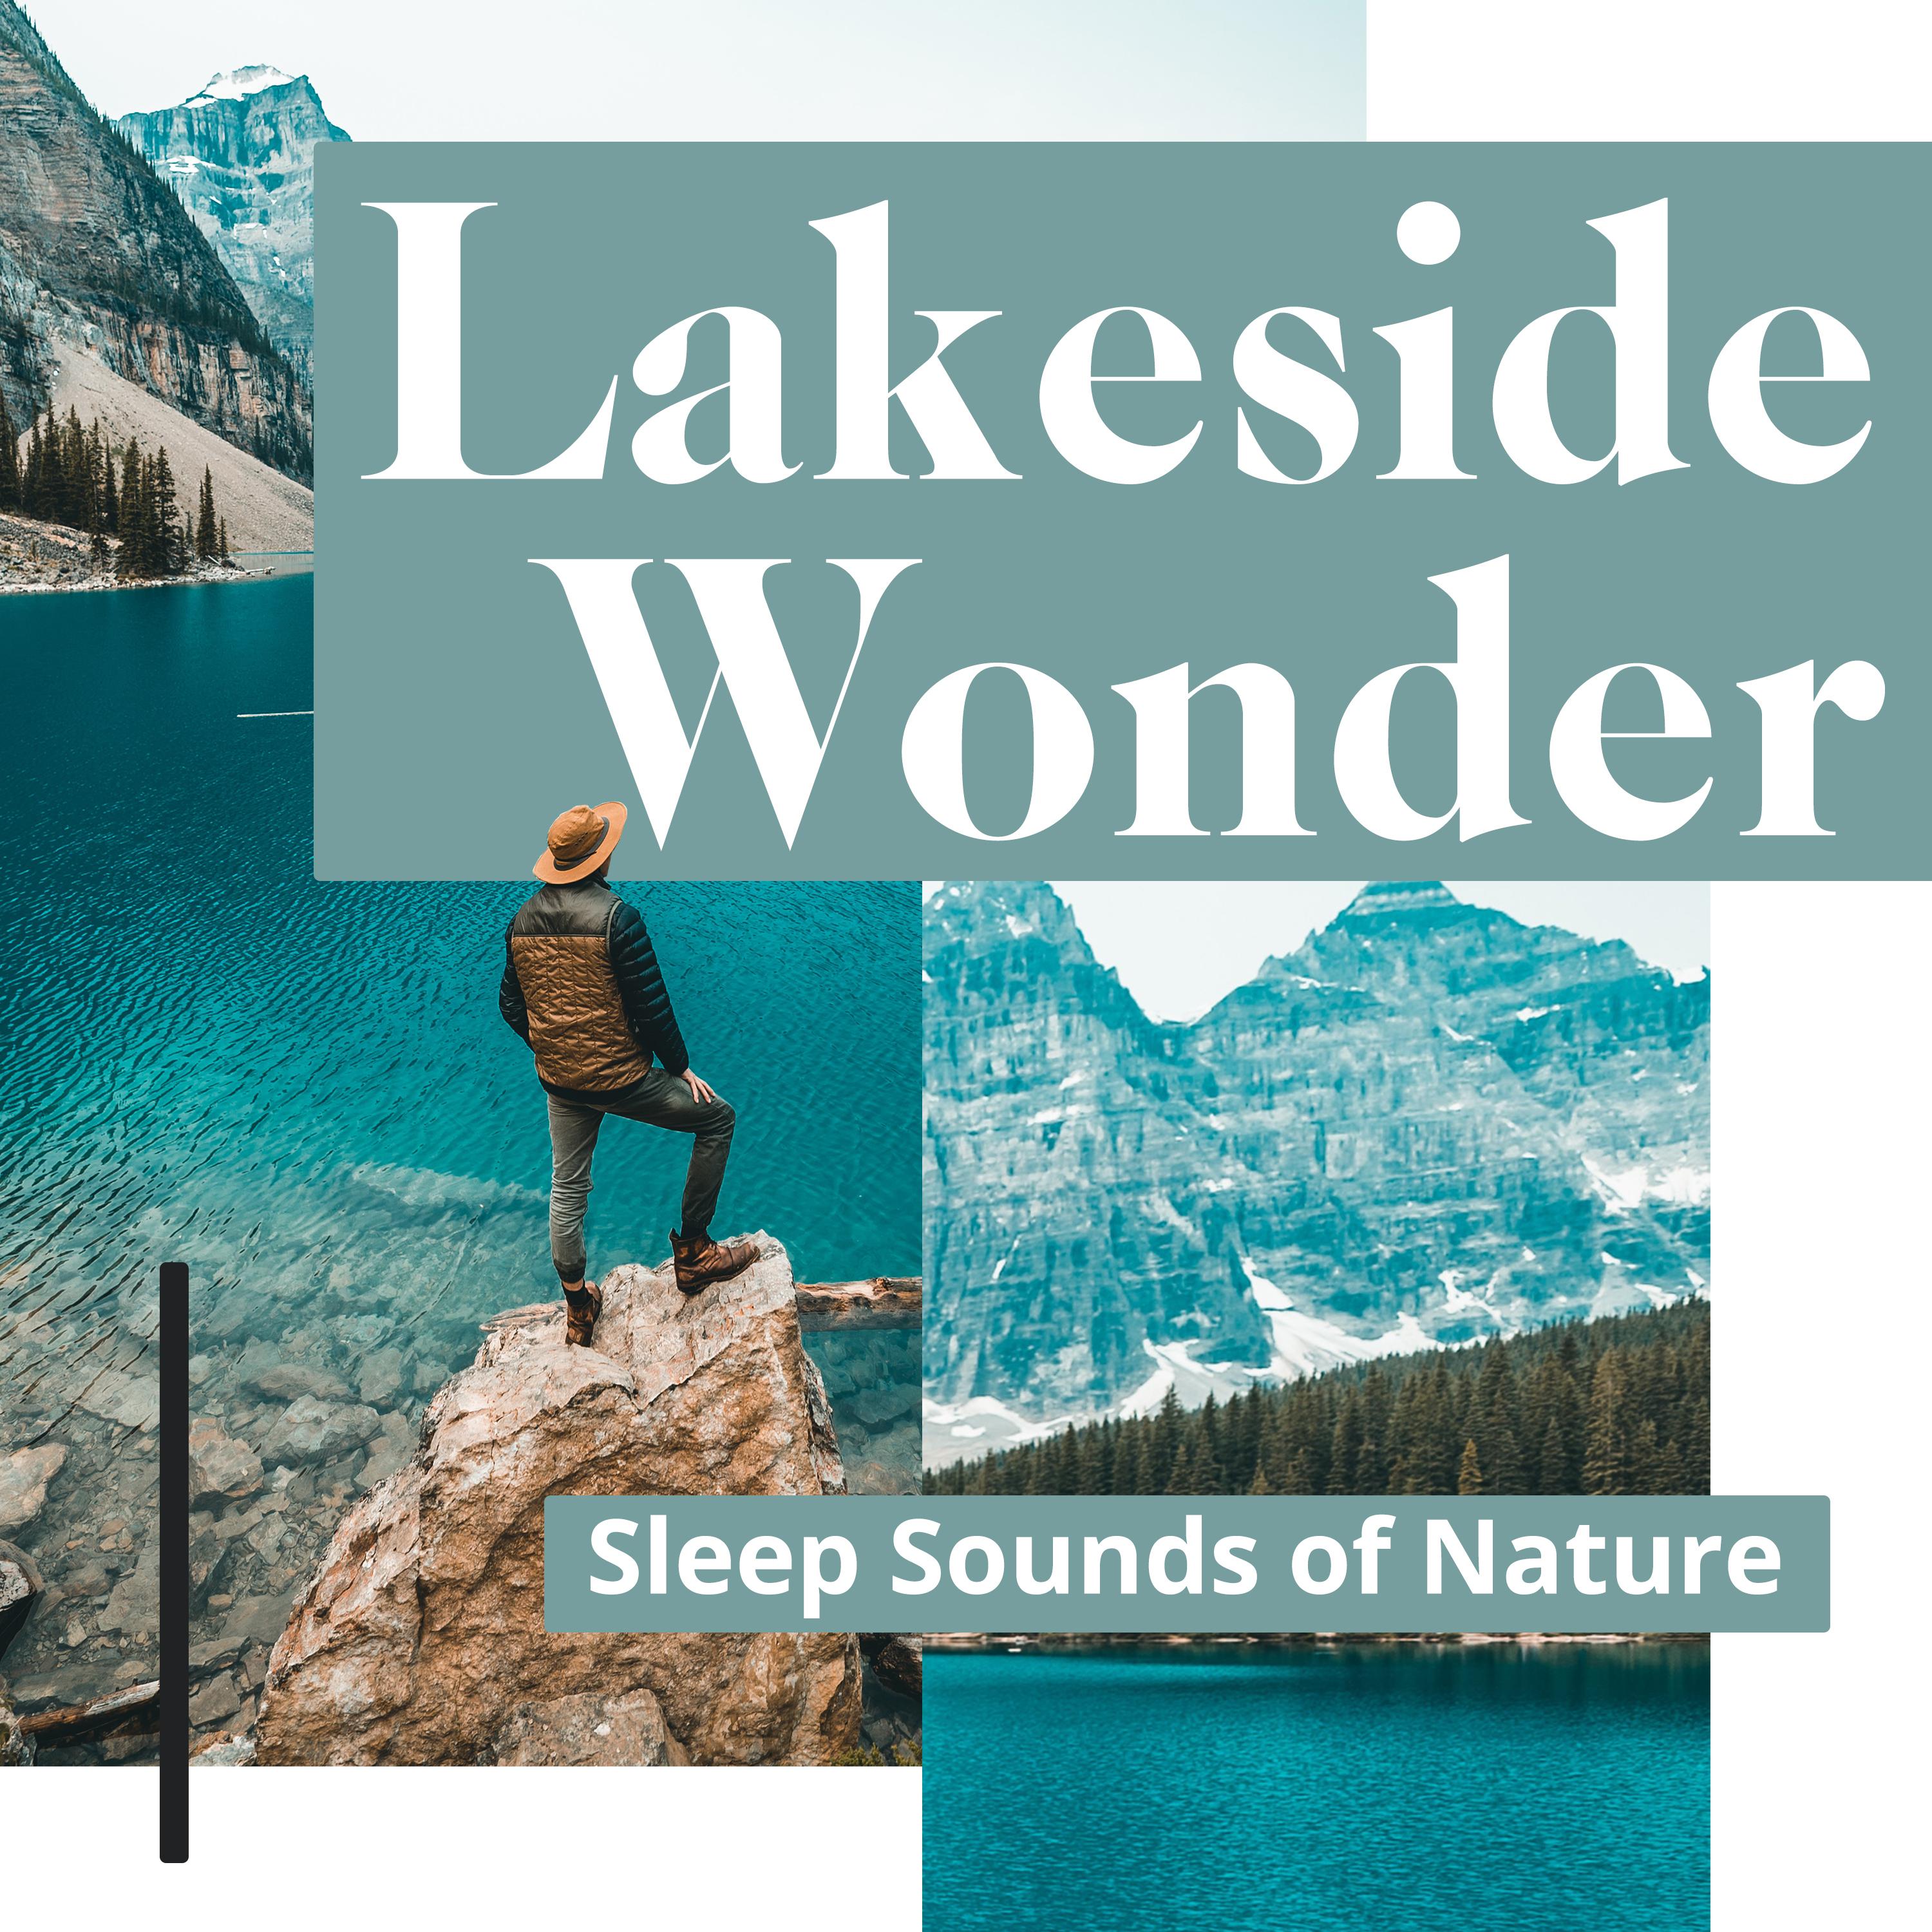 Lakeside Wonder